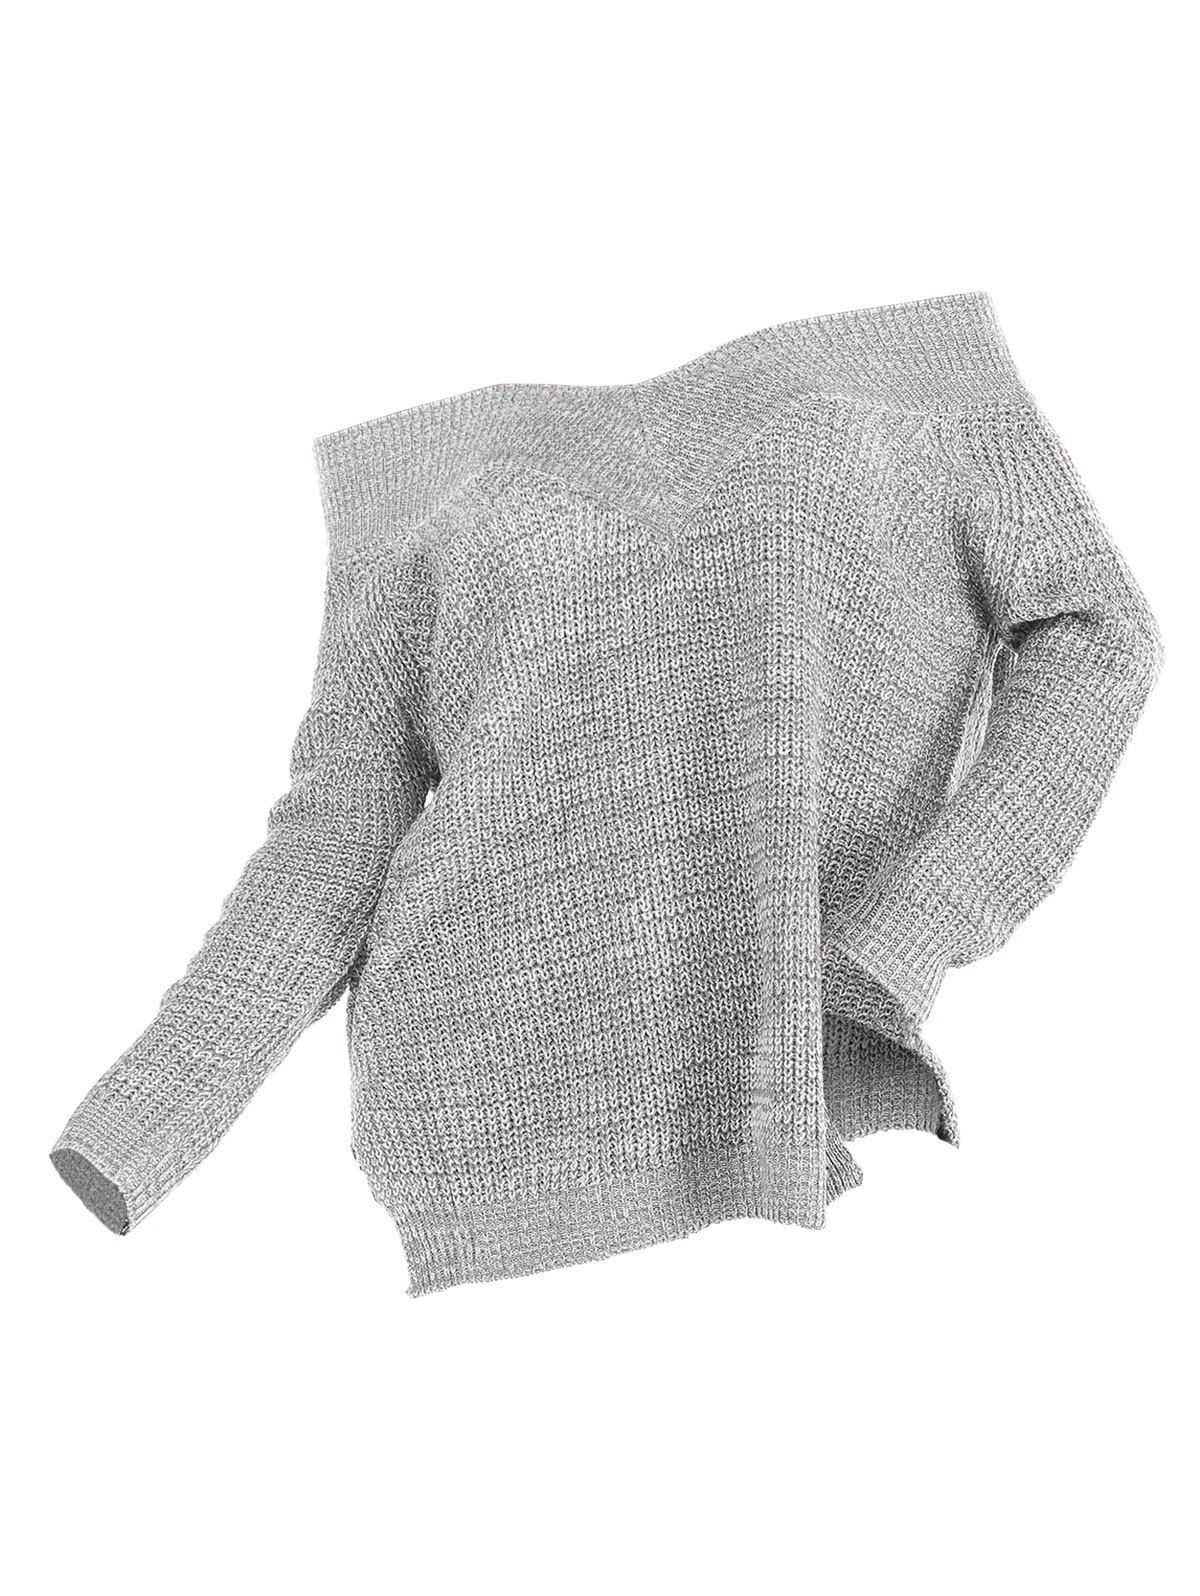 Off Shoulder Slit Jumper Sweater - GRAY XL